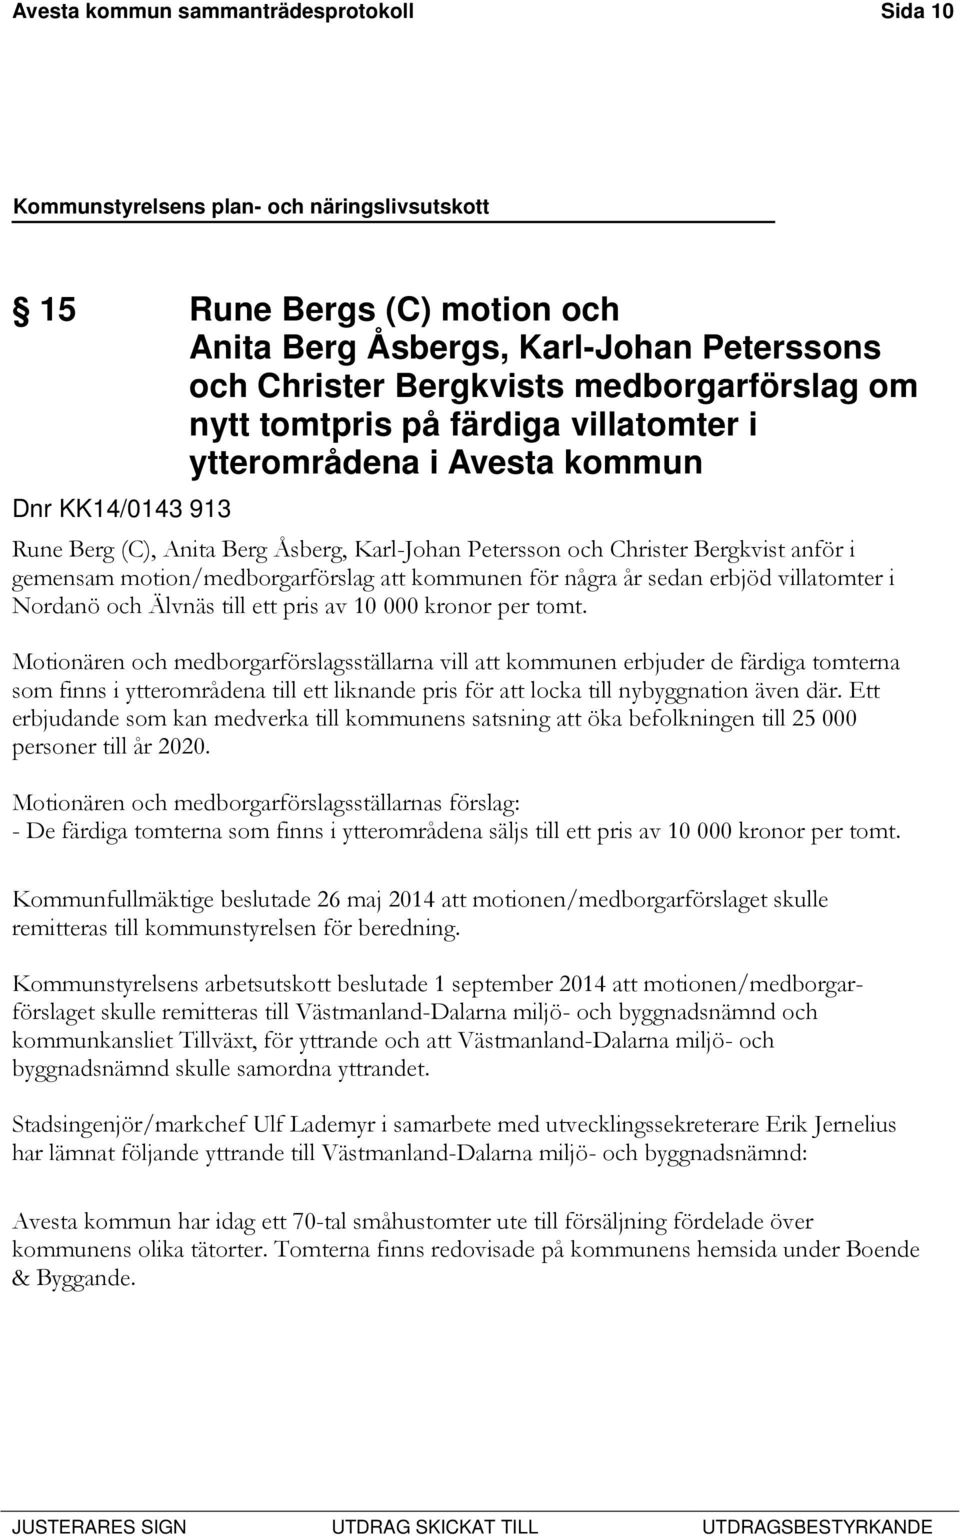 erbjöd villatomter i Nordanö och Älvnäs till ett pris av 10 000 kronor per tomt.